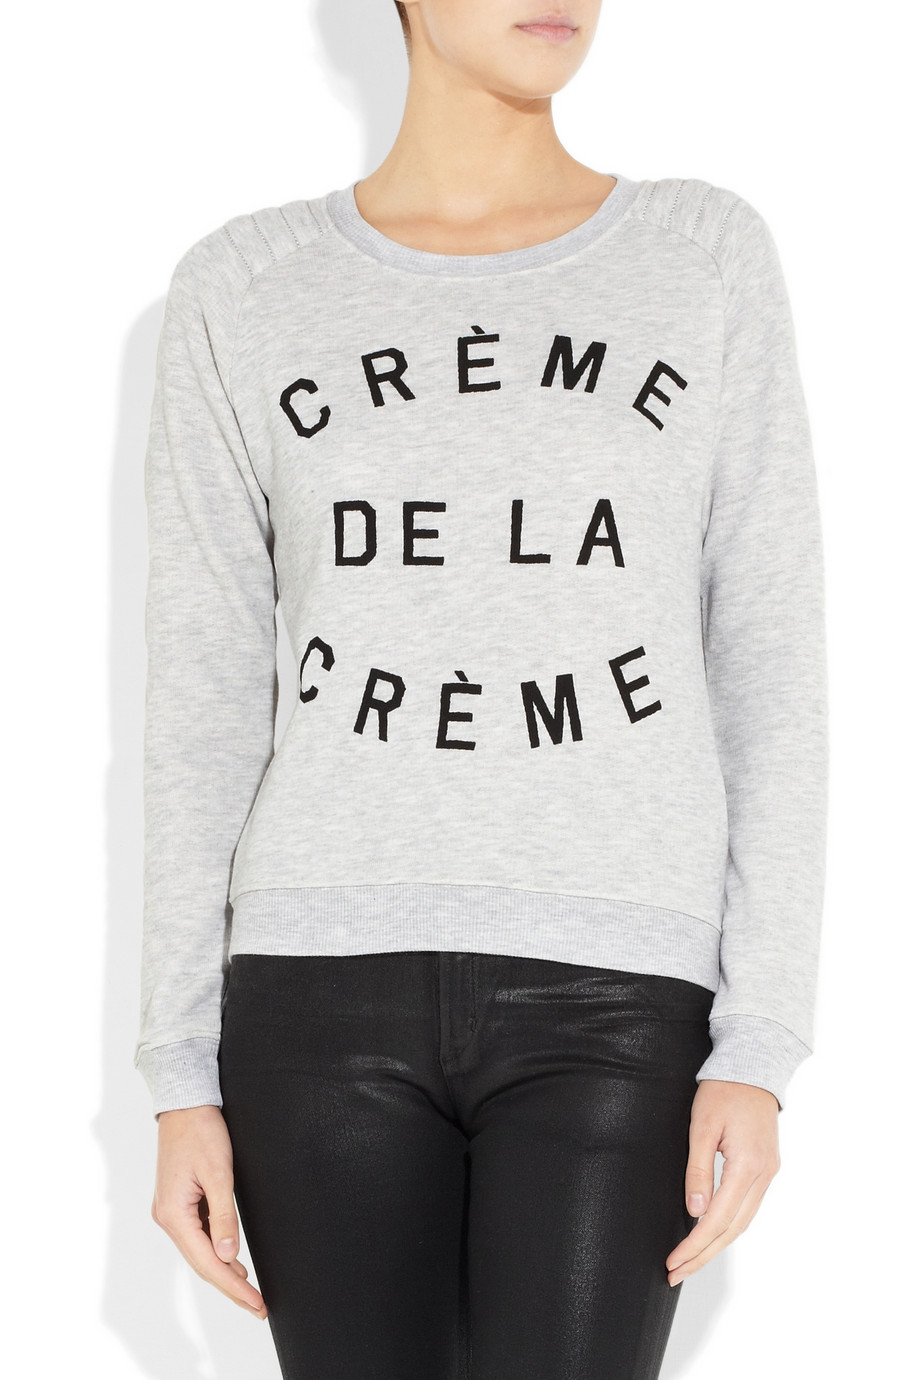 Lyst - Zoe Karssen Crème De La Crème Cottonblend Terry Sweatshirt in Gray